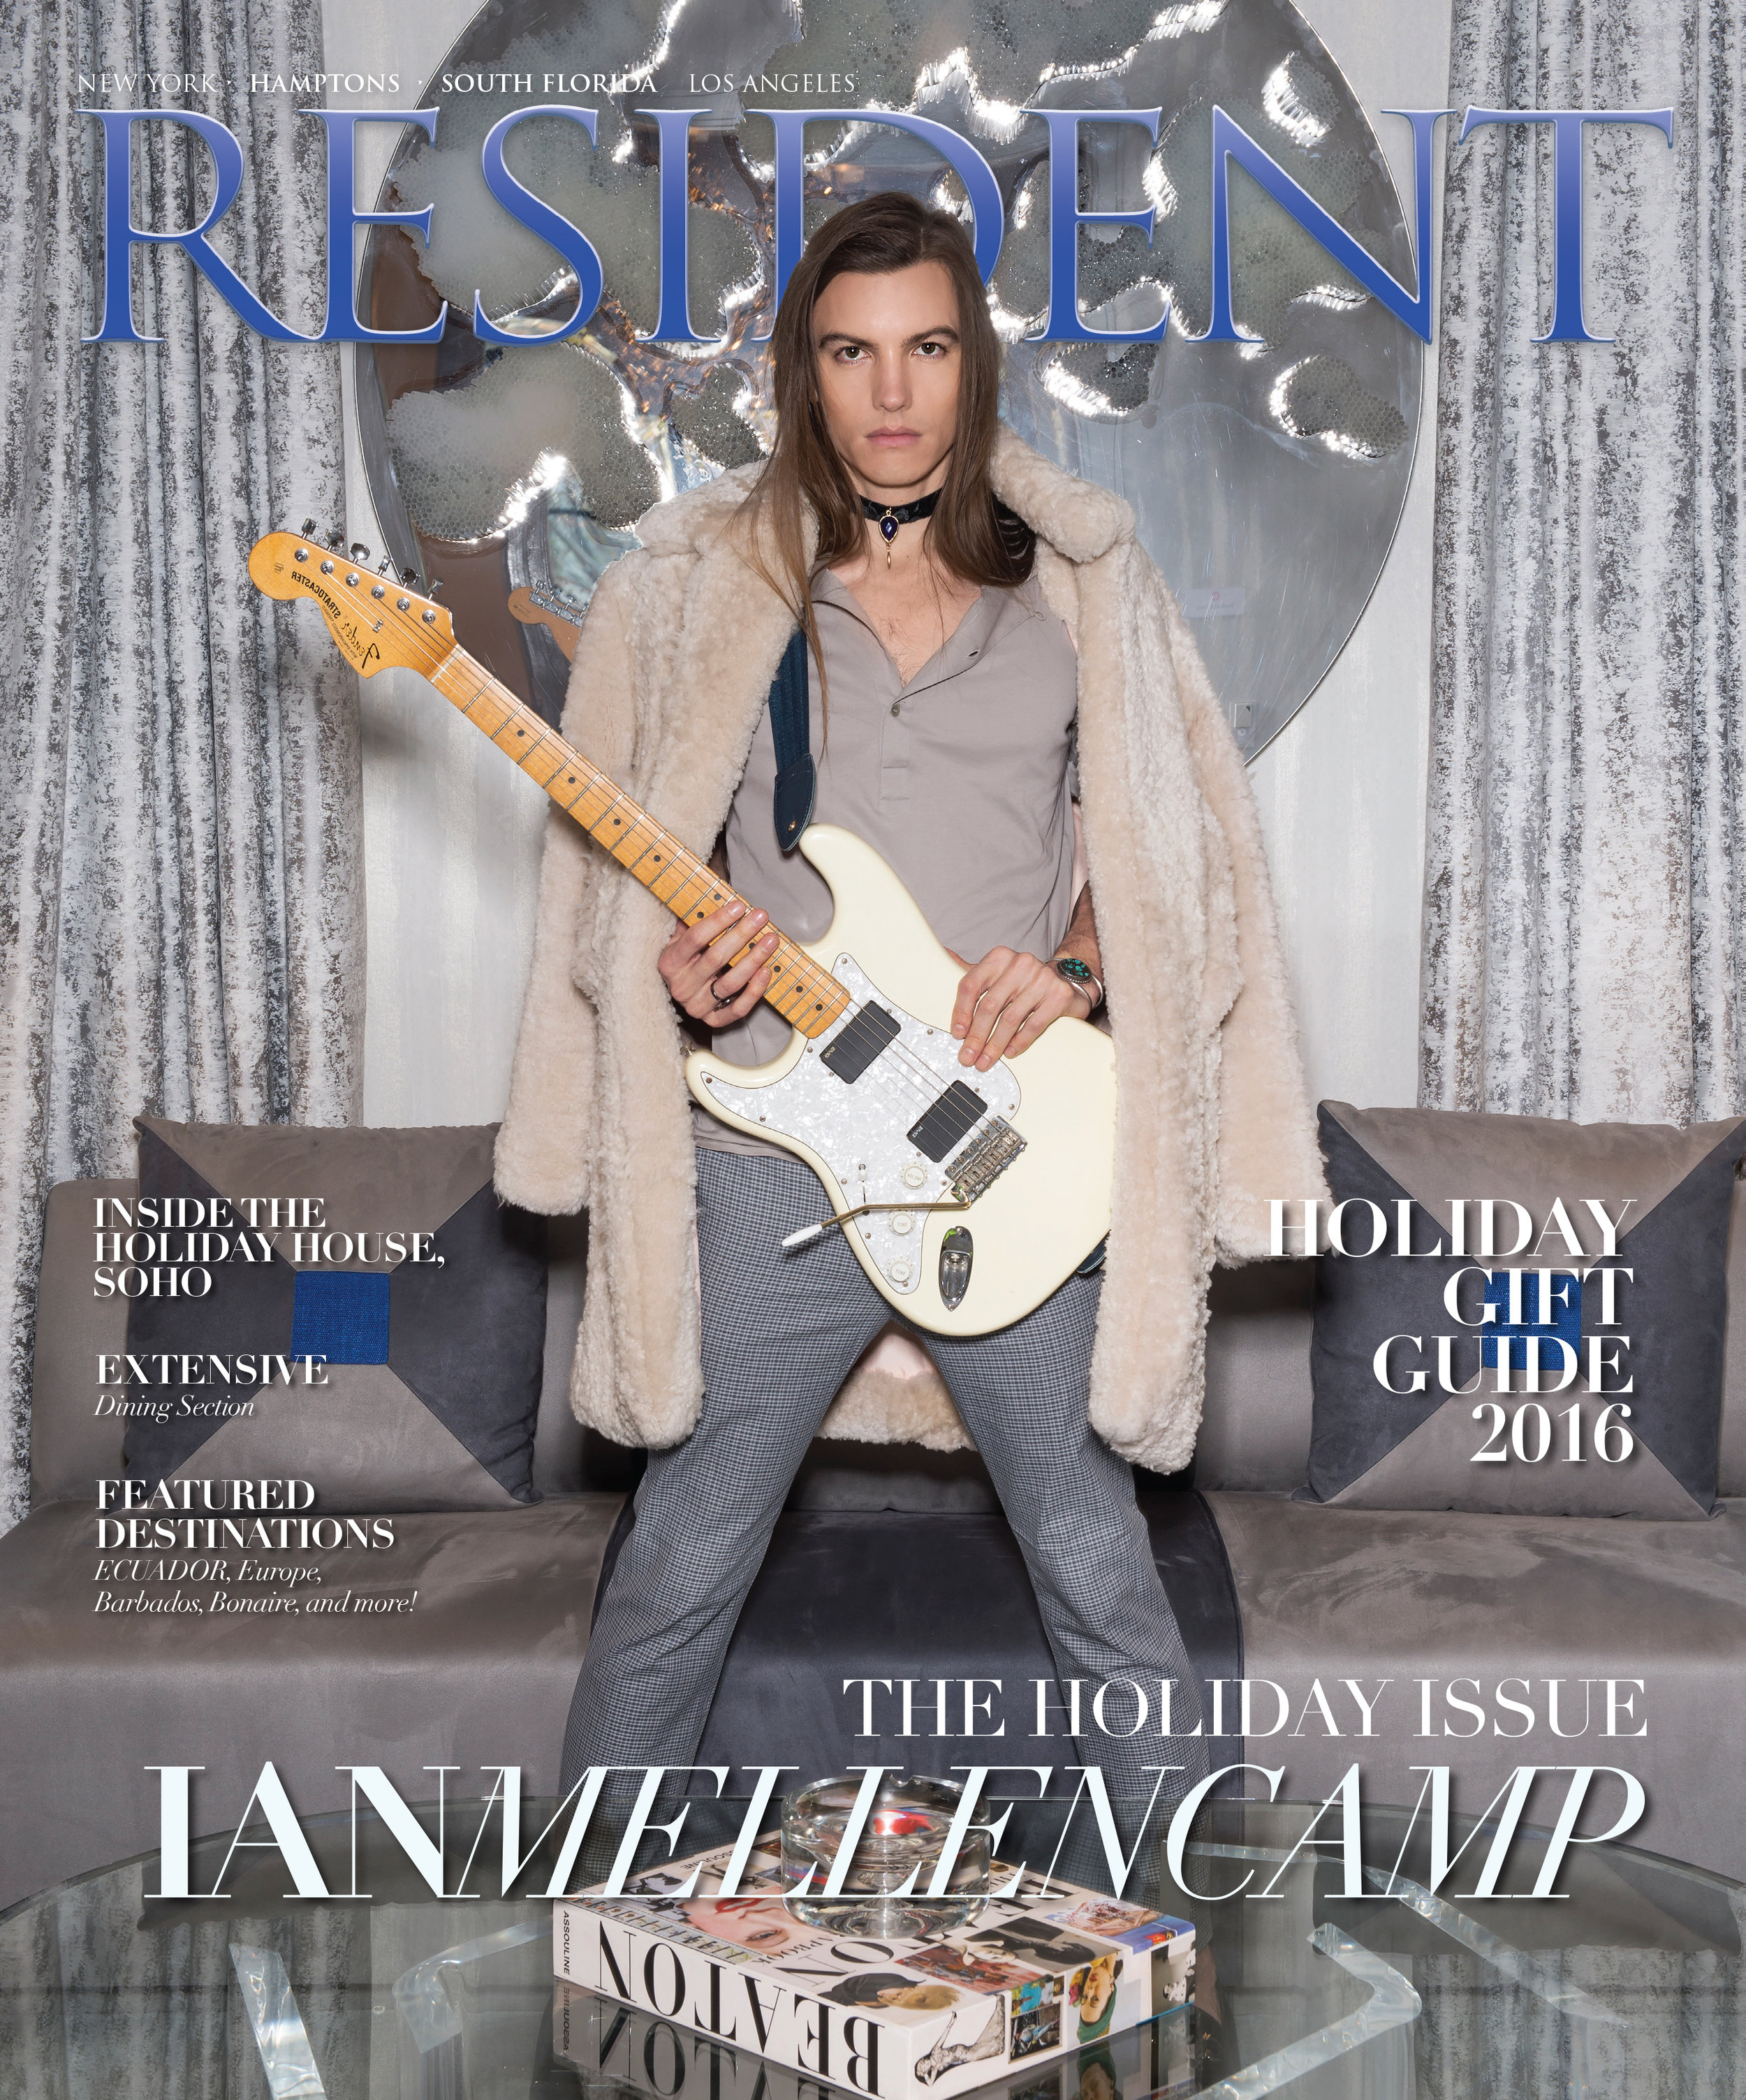 Resident Magazine December 2016 Cover ft. Ian Mellencamp by photographer Andrew Werner.jpg